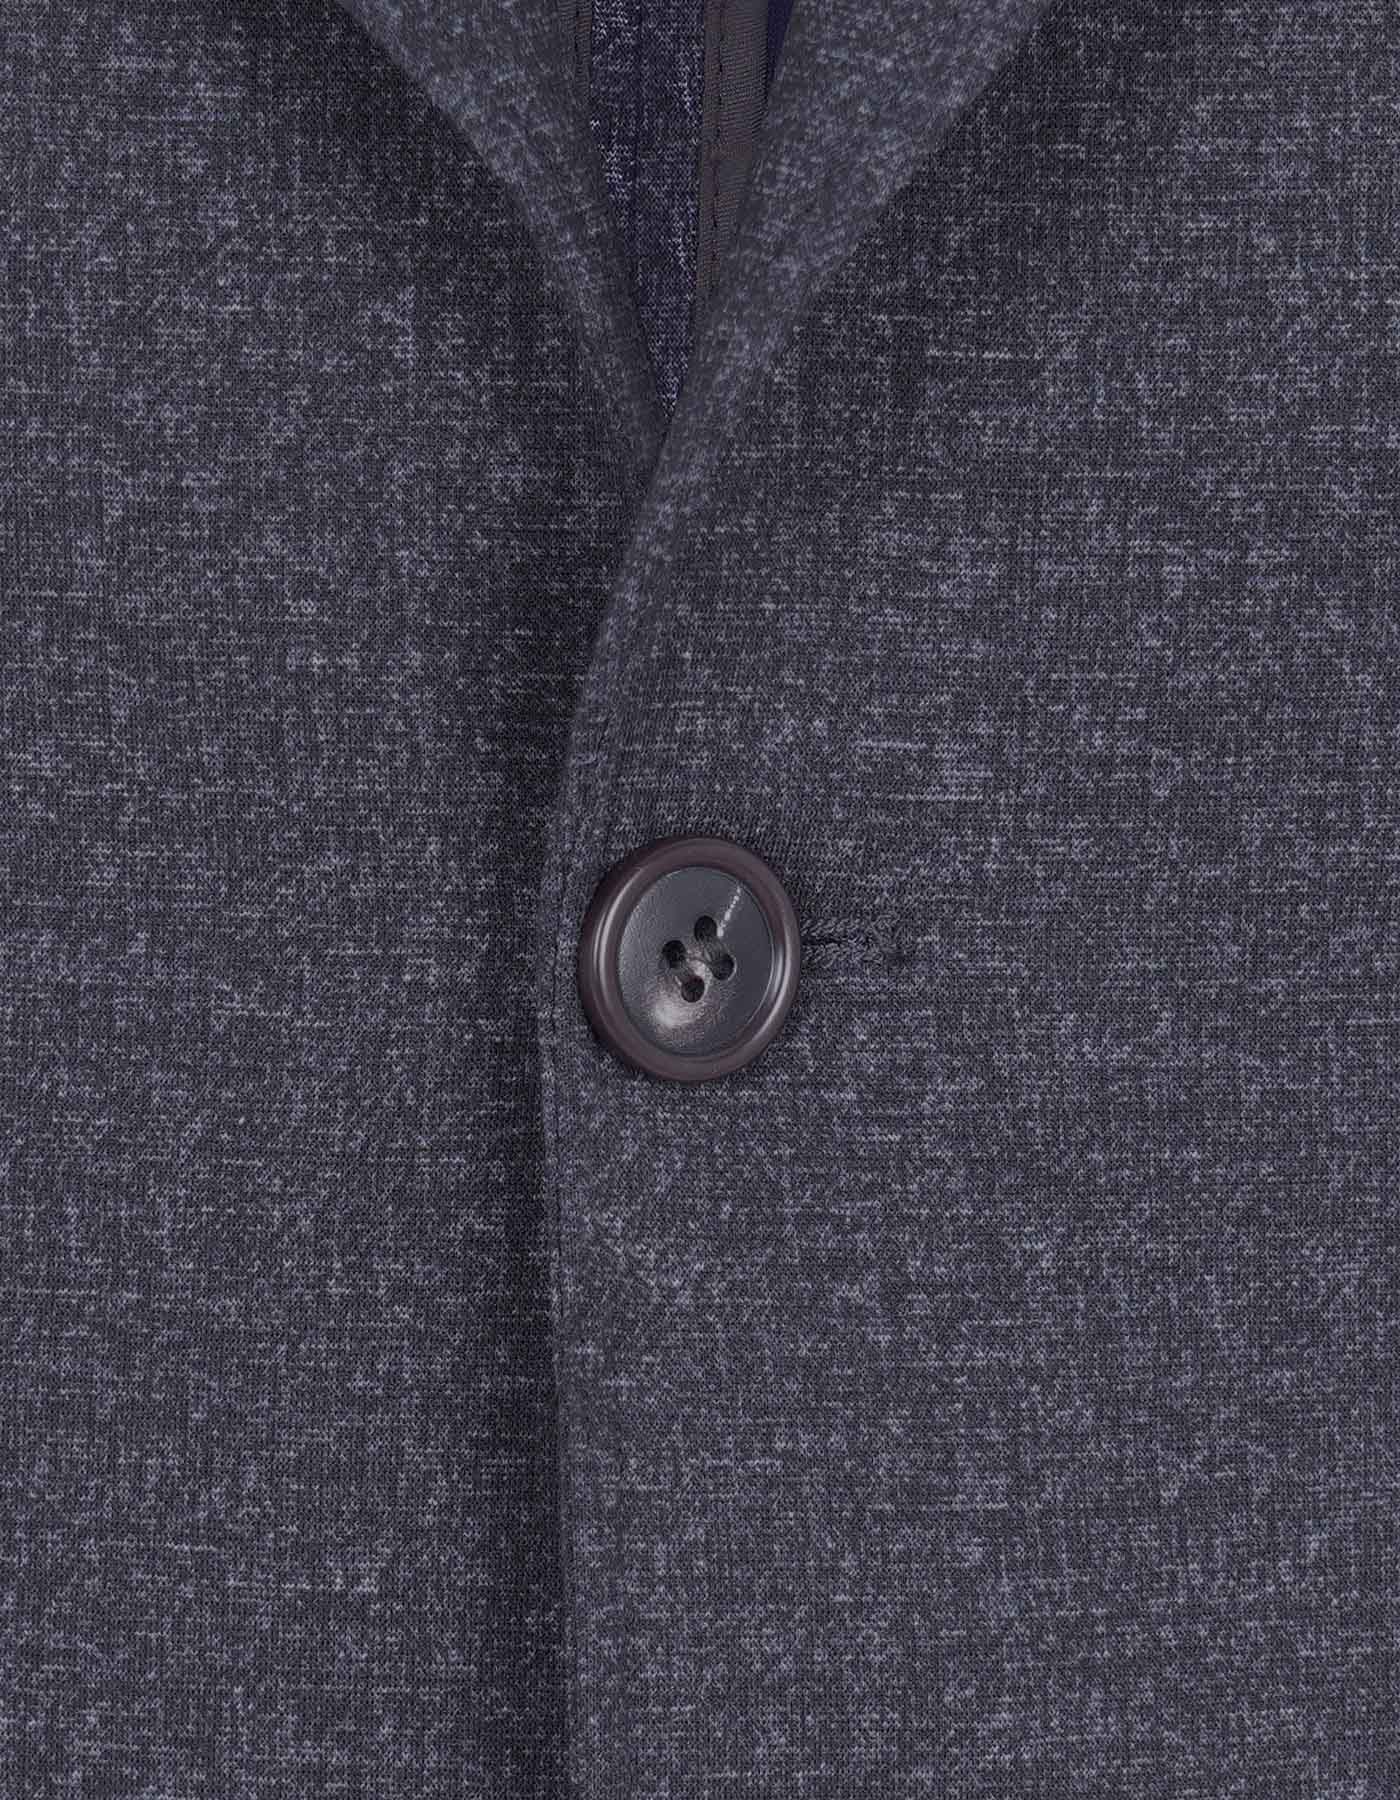 Charcoal Coat for Men |Uniworth